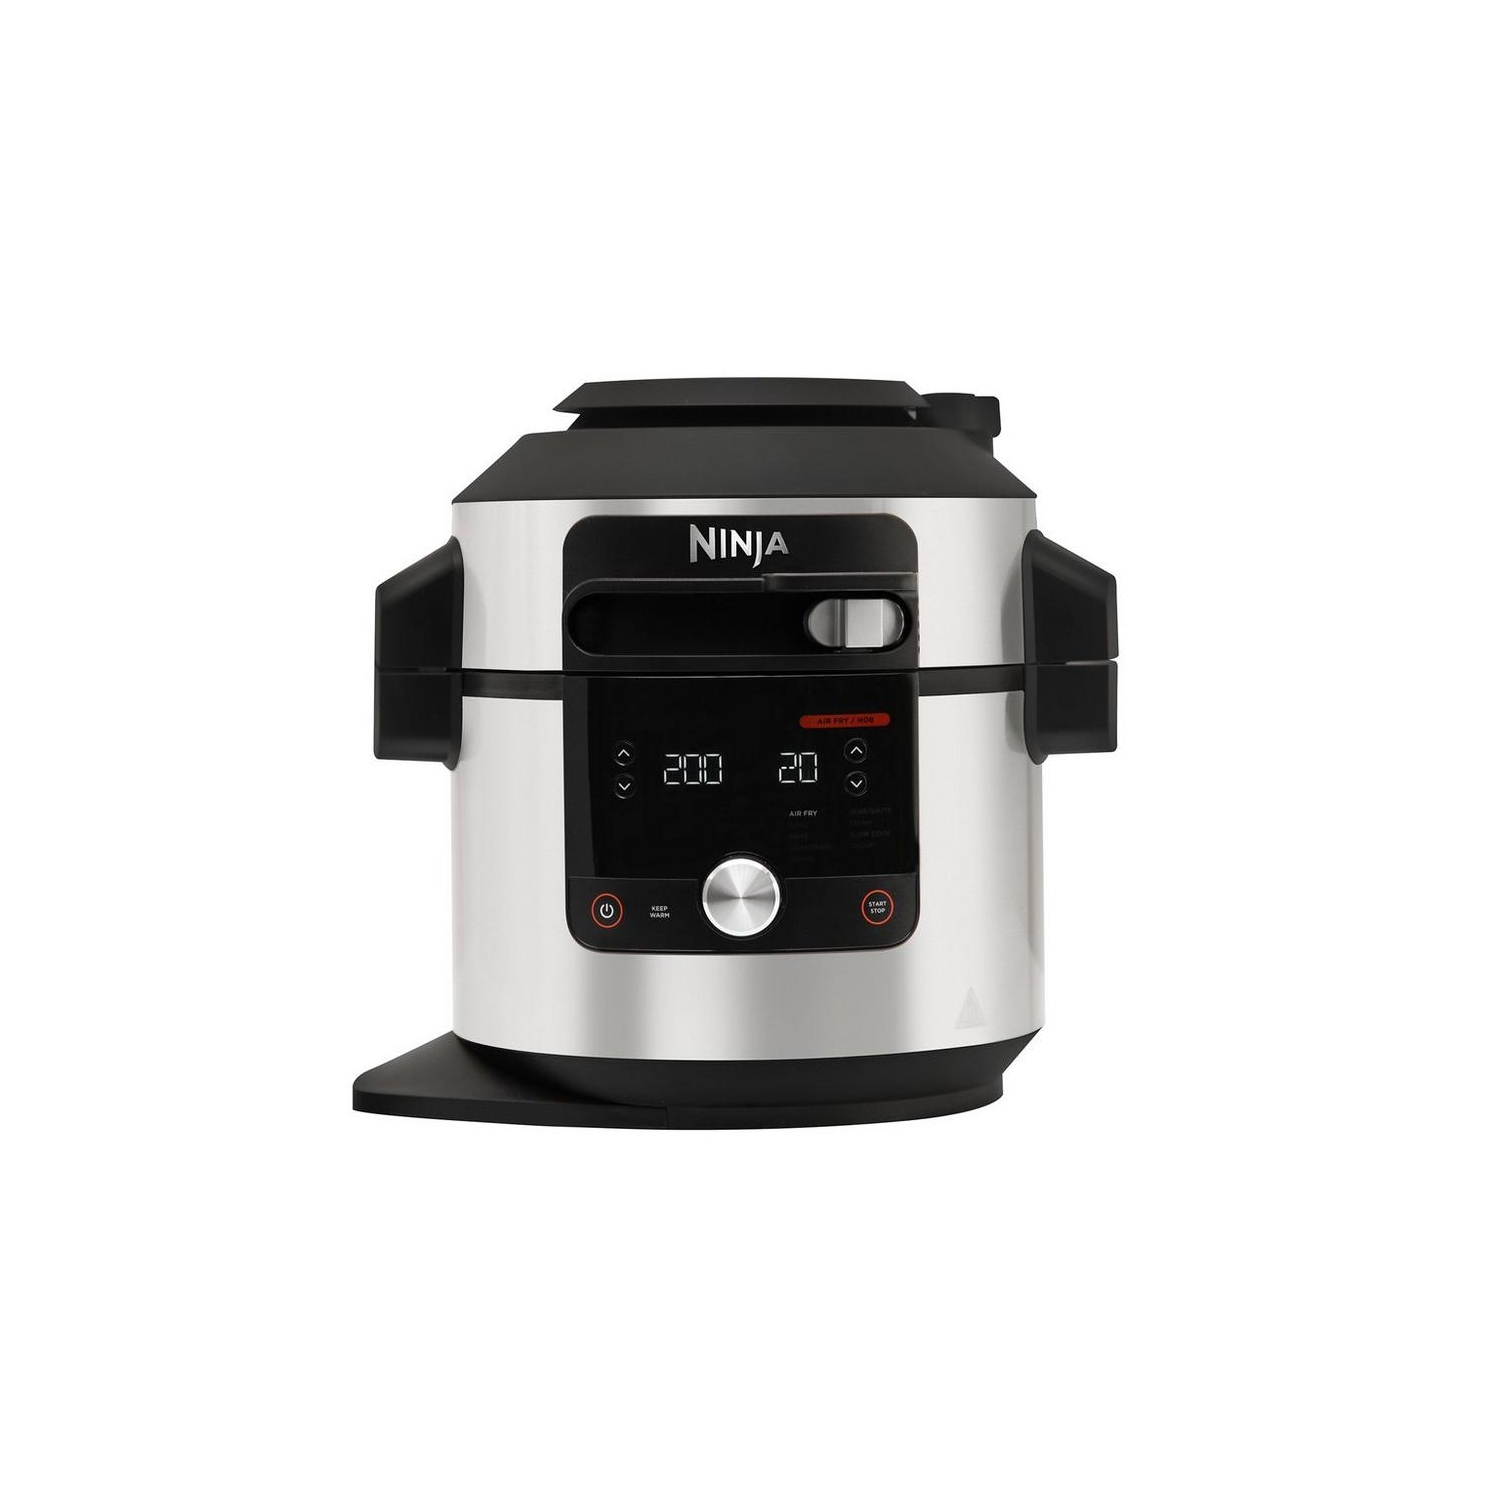 Ninja OL650UK 7.5L 14-In-1 One Lid Multi Cooker - Black / Stainless Steel - 0